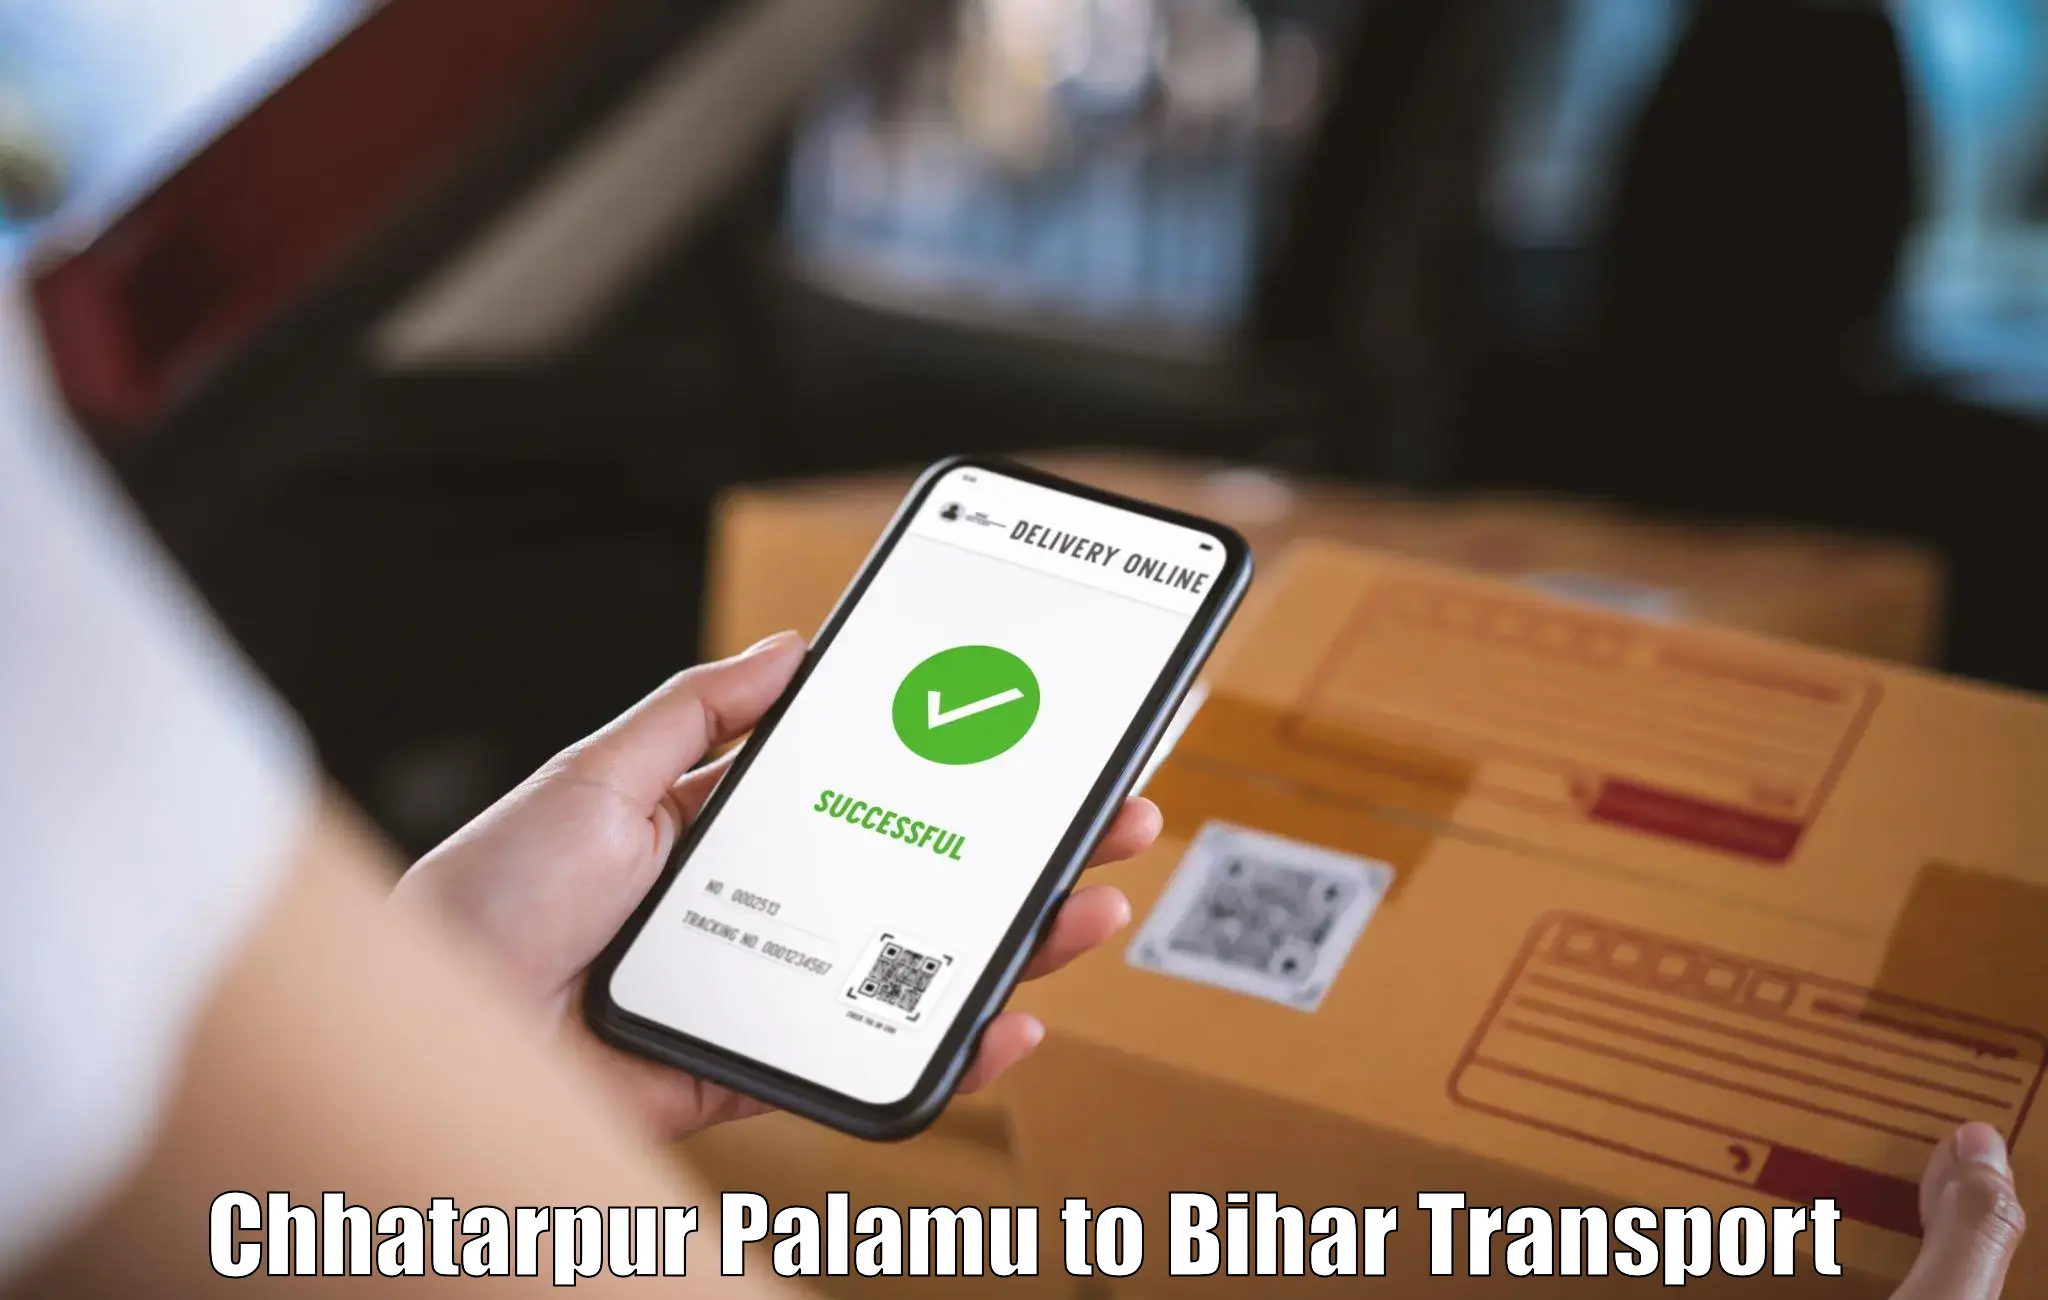 Road transport services Chhatarpur Palamu to Bihar Sharif